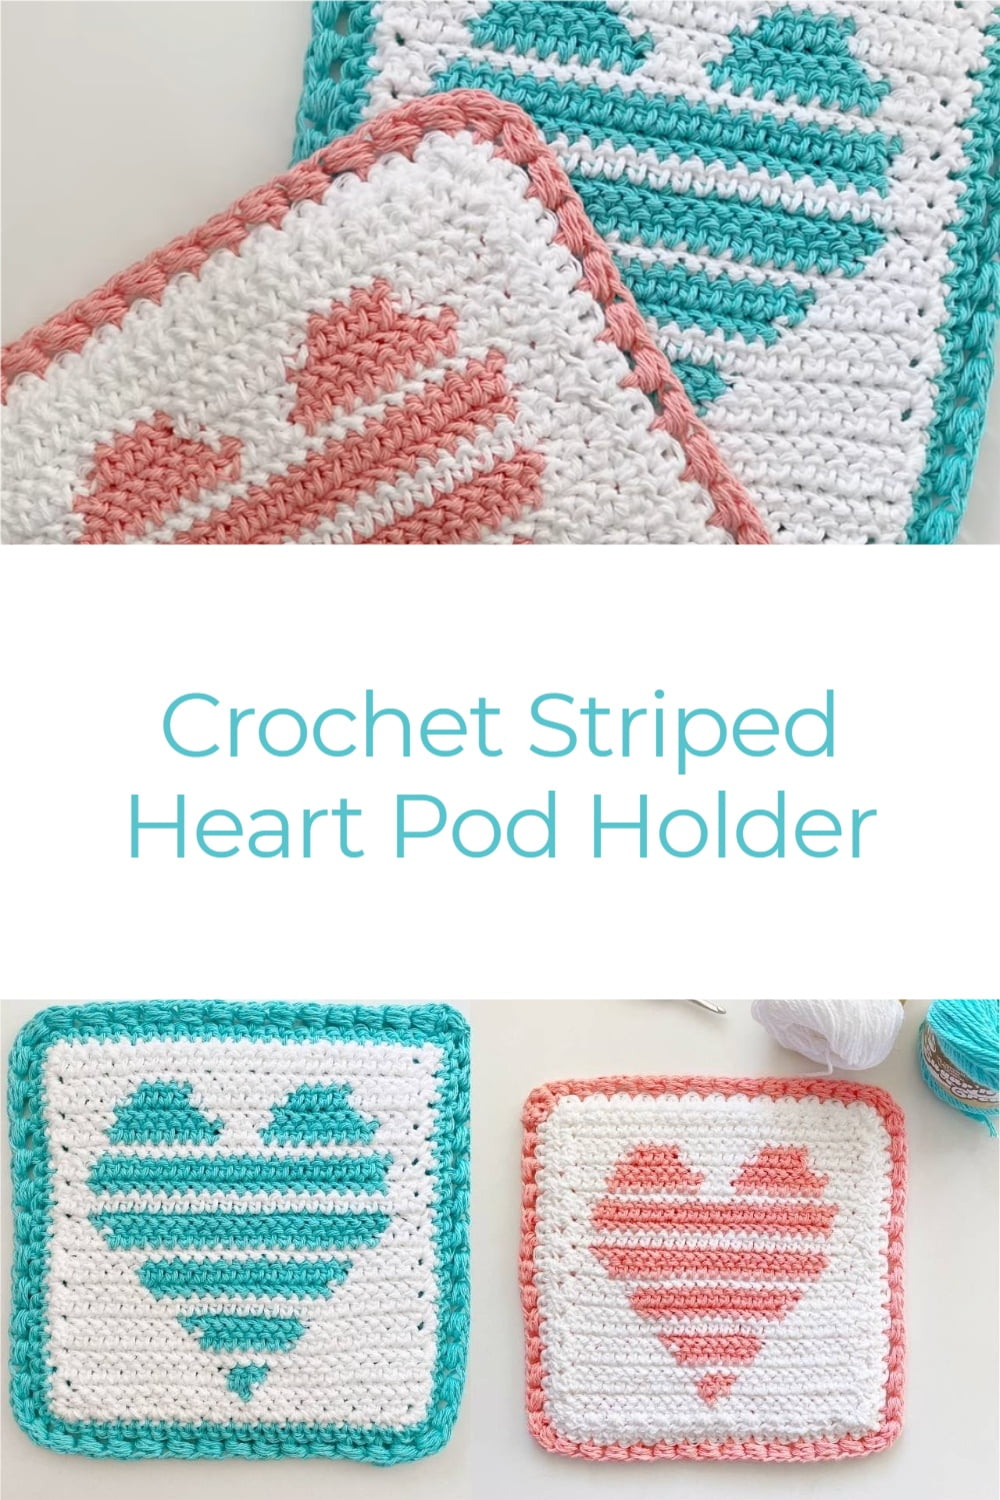 Crochet Striped Heart Pod Holder